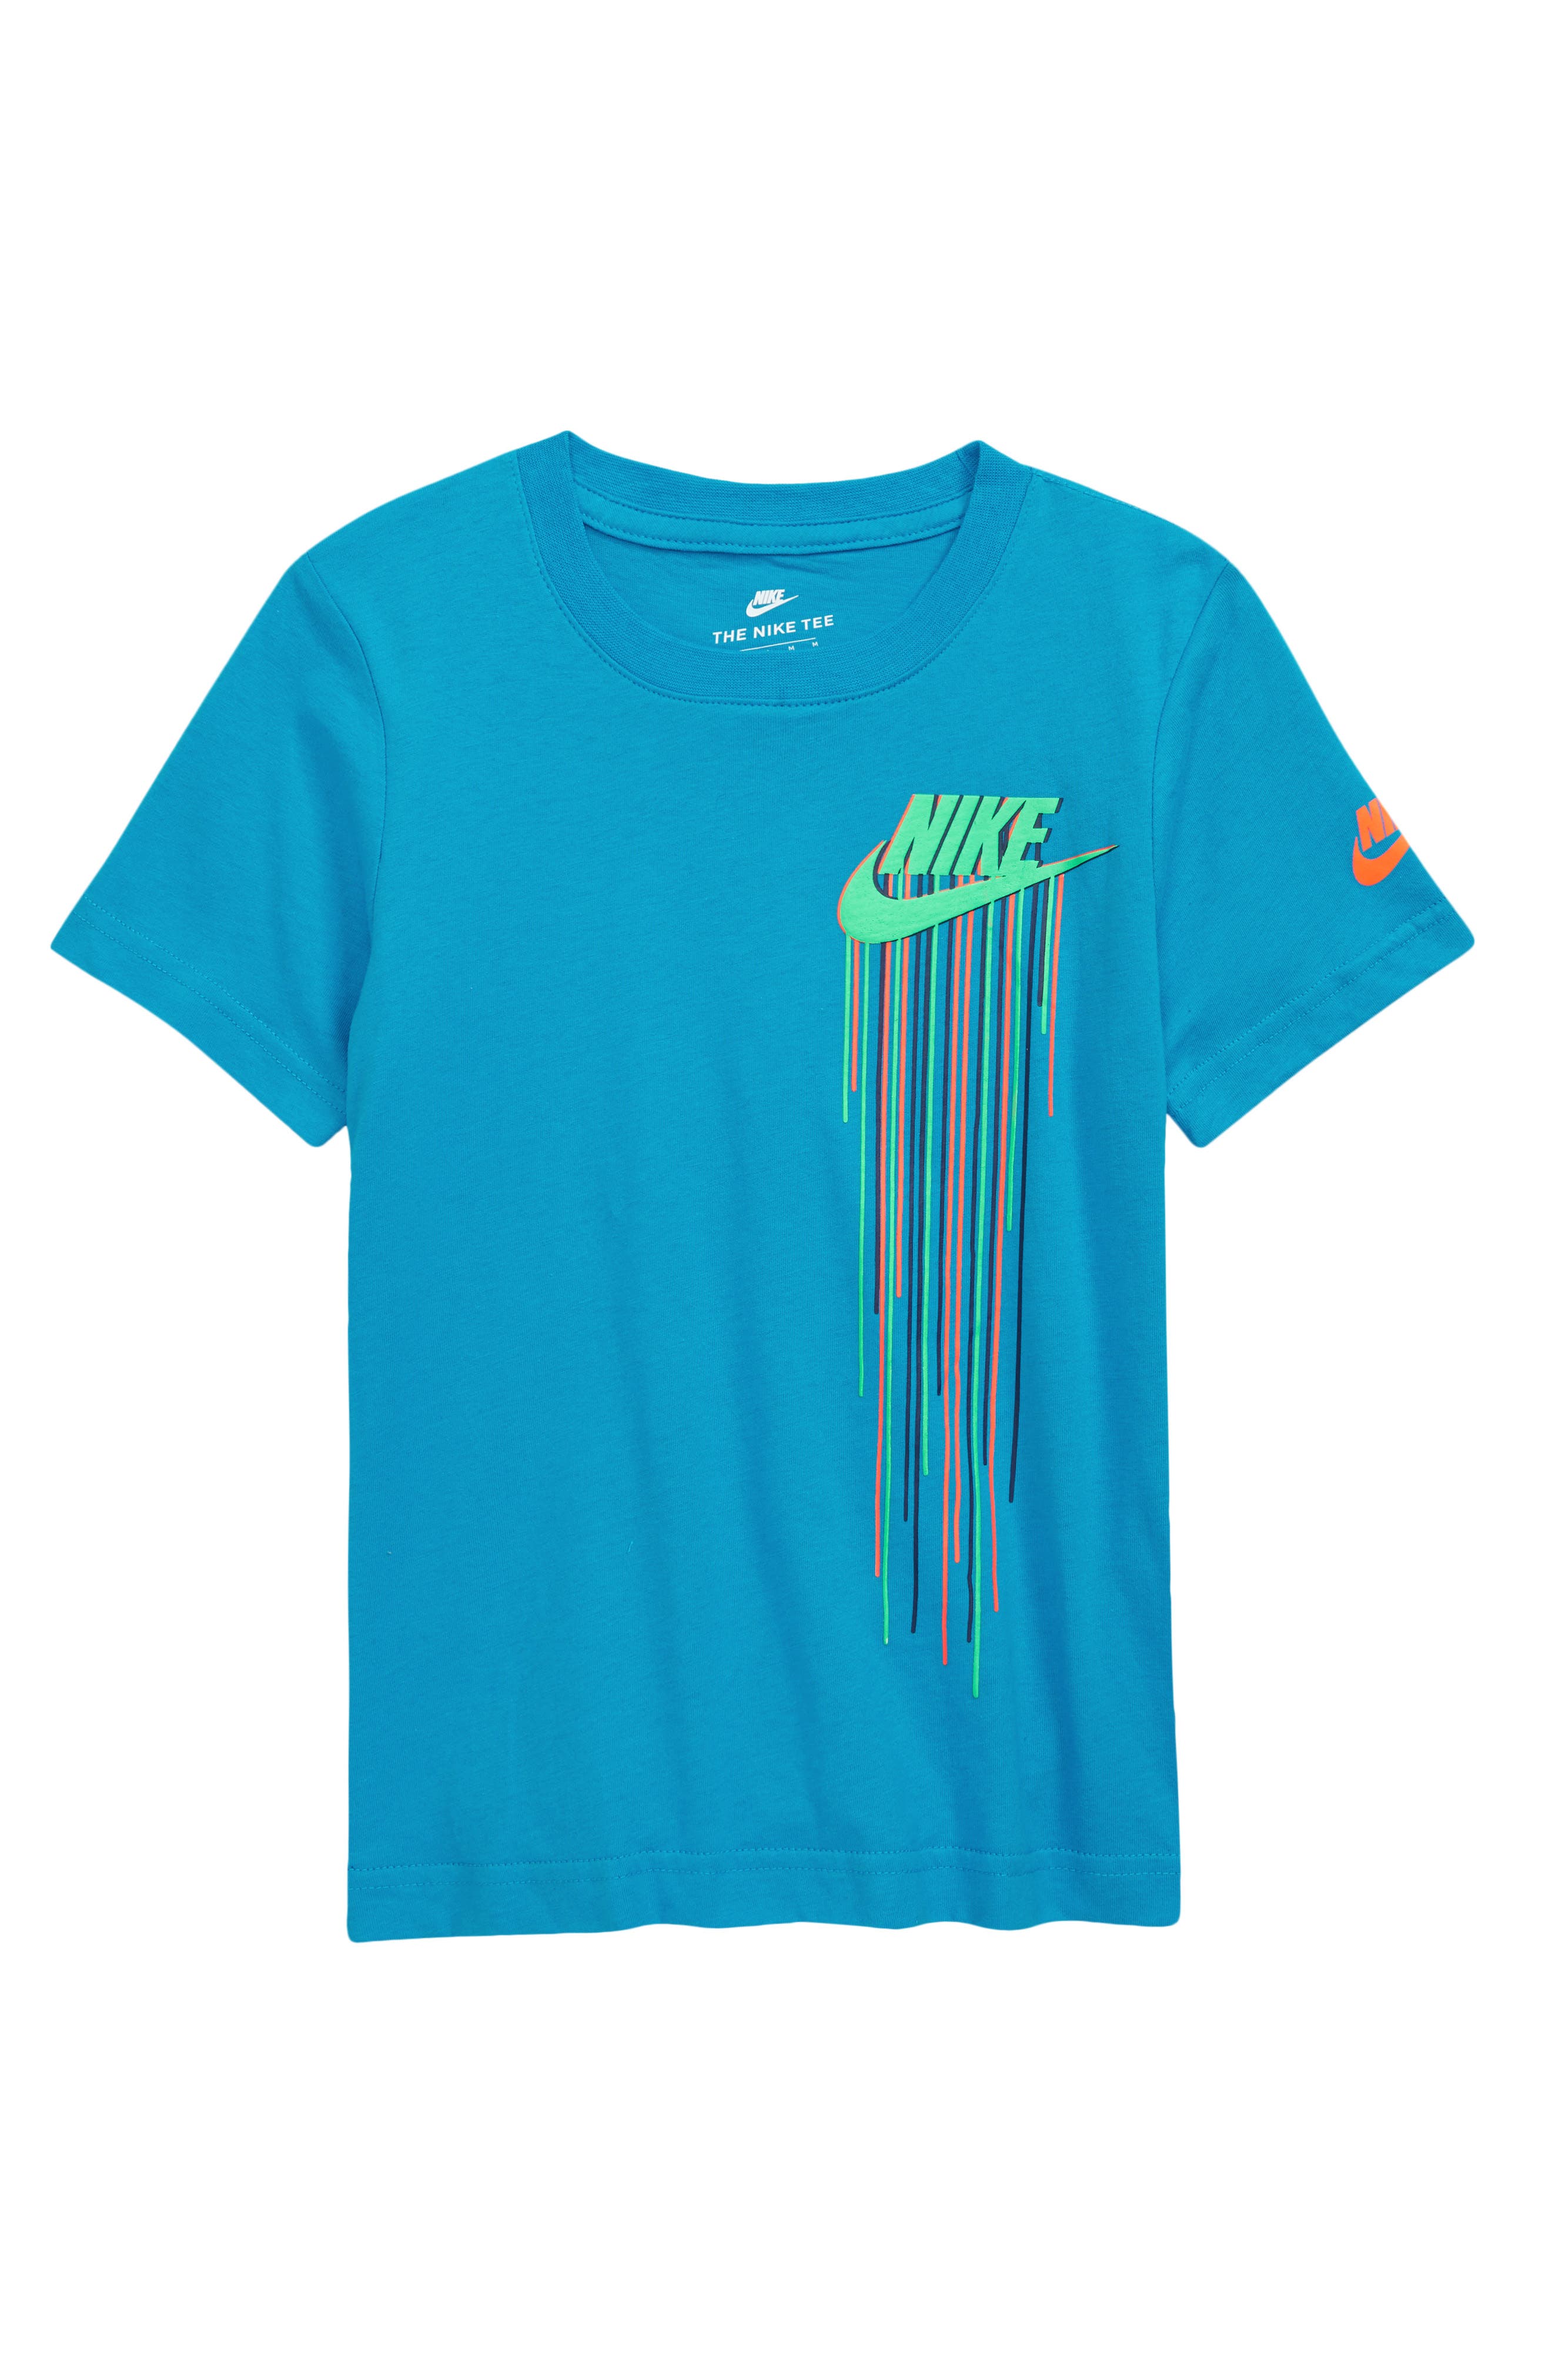 Boys' Nike Clothing: Hoodies, Shirts 